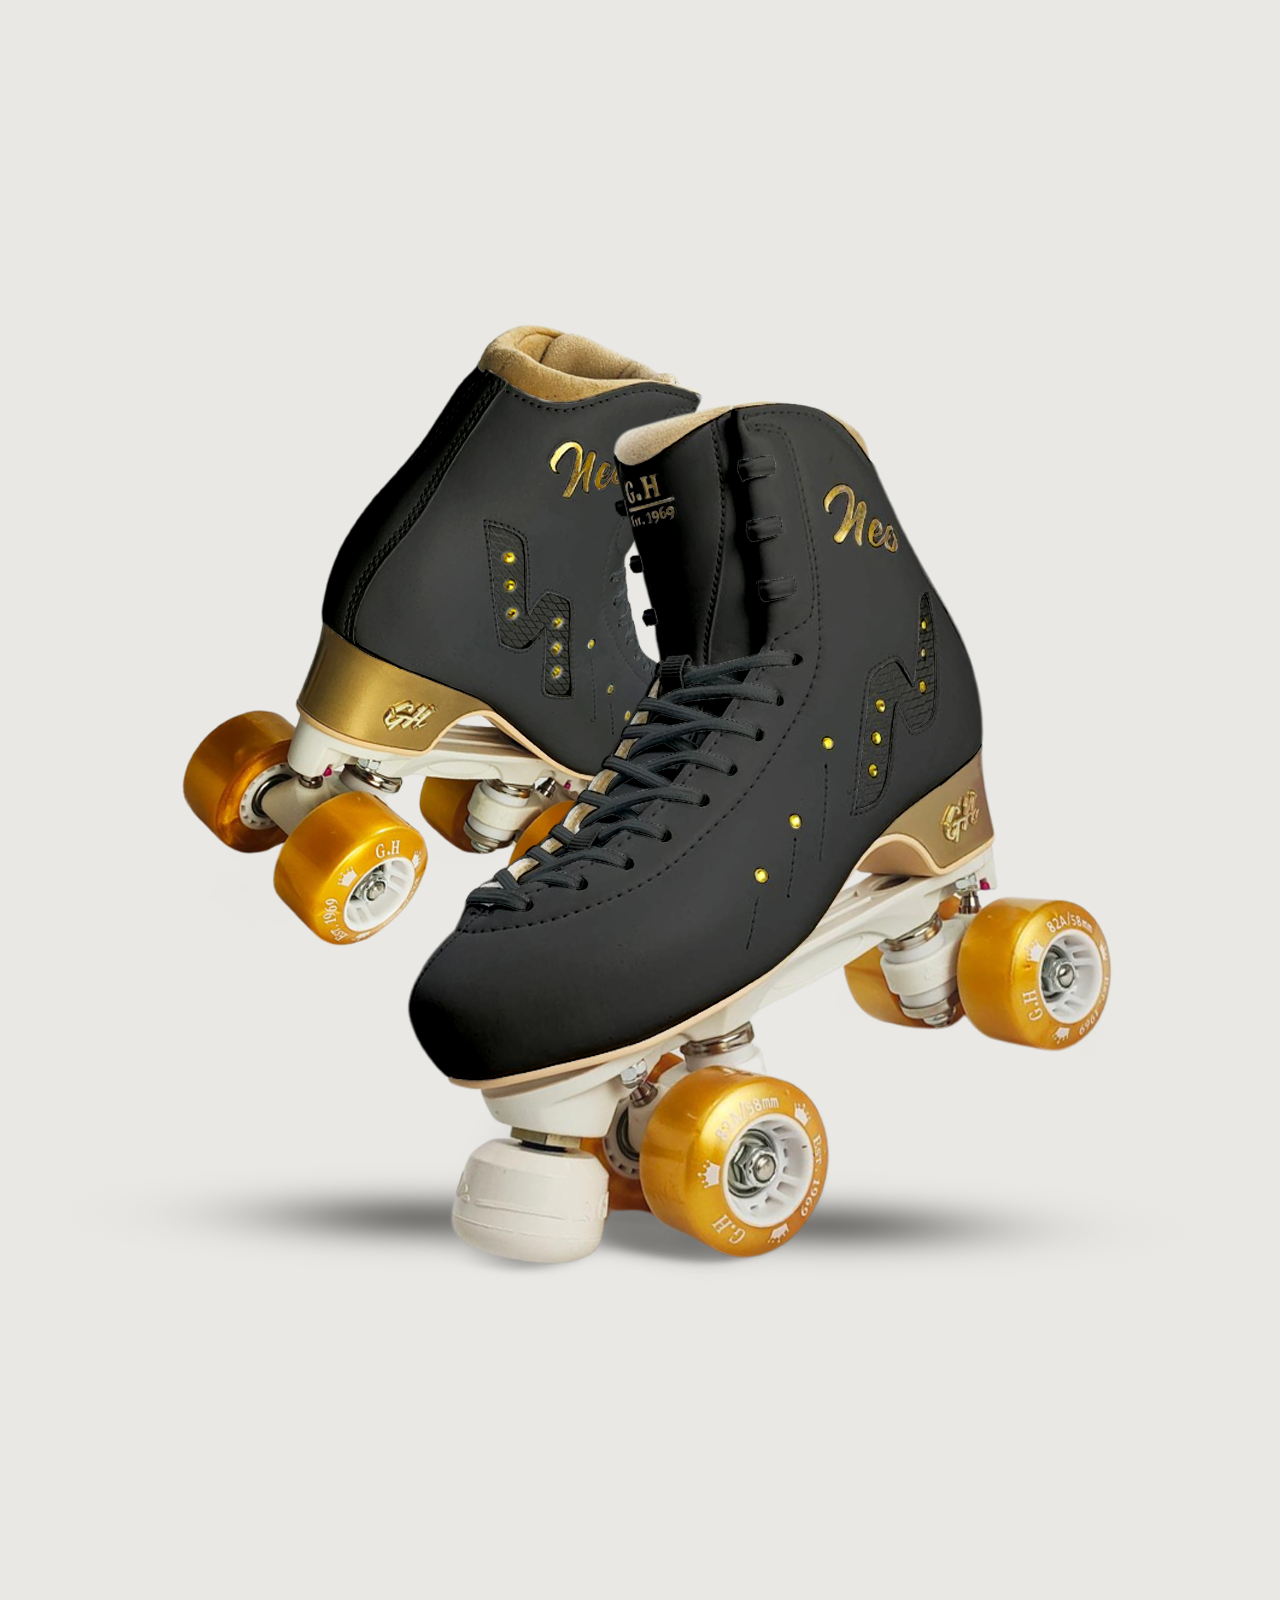 Neo Quad Roller Skates